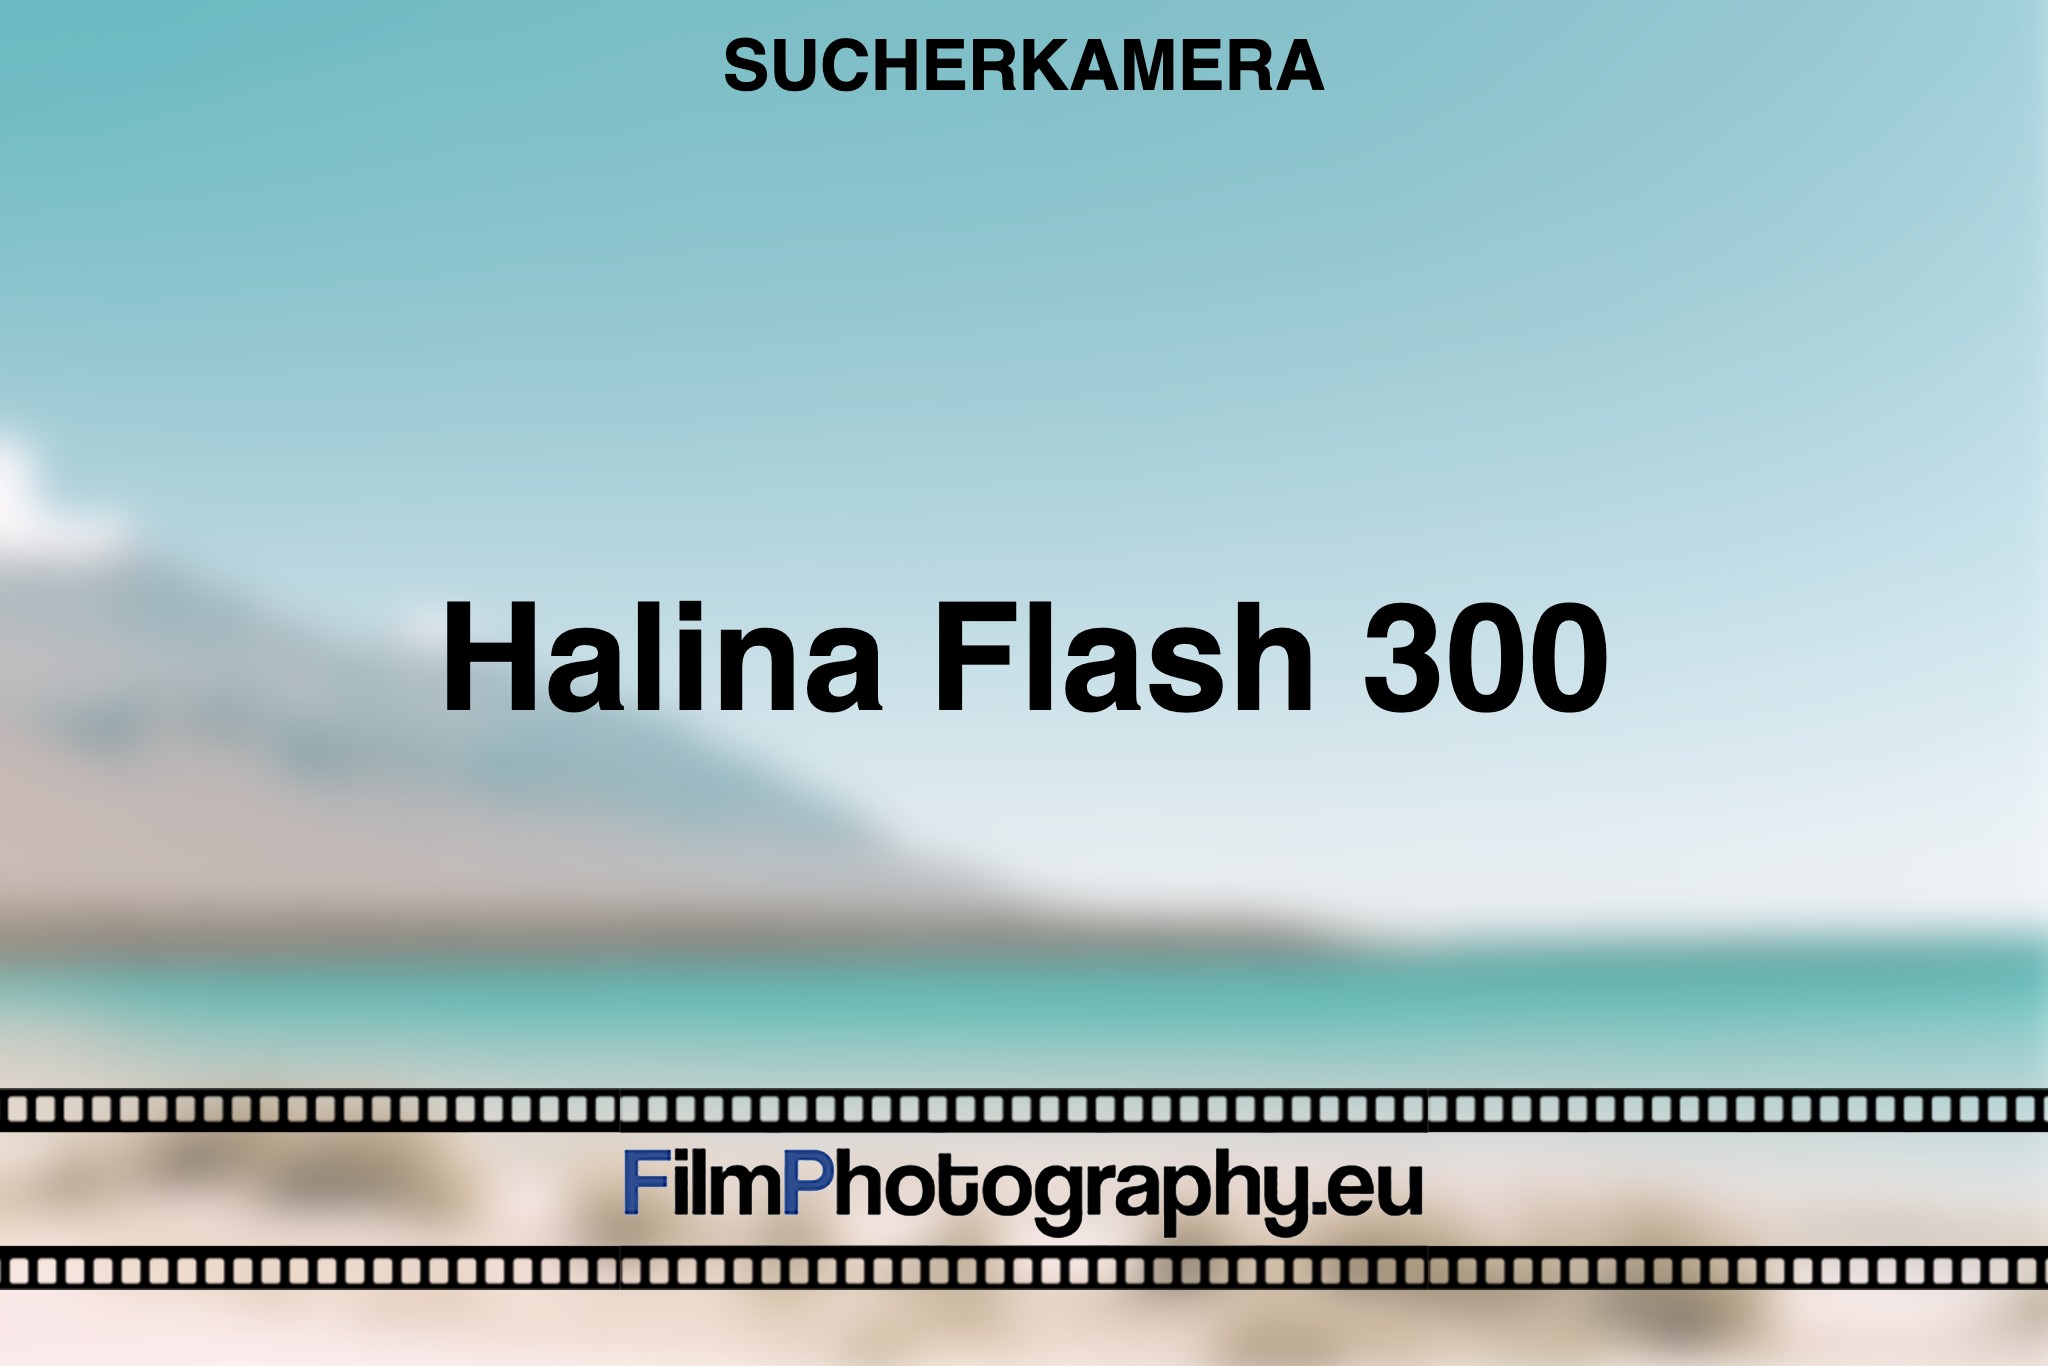 halina-flash-300-sucherkamera-bnv